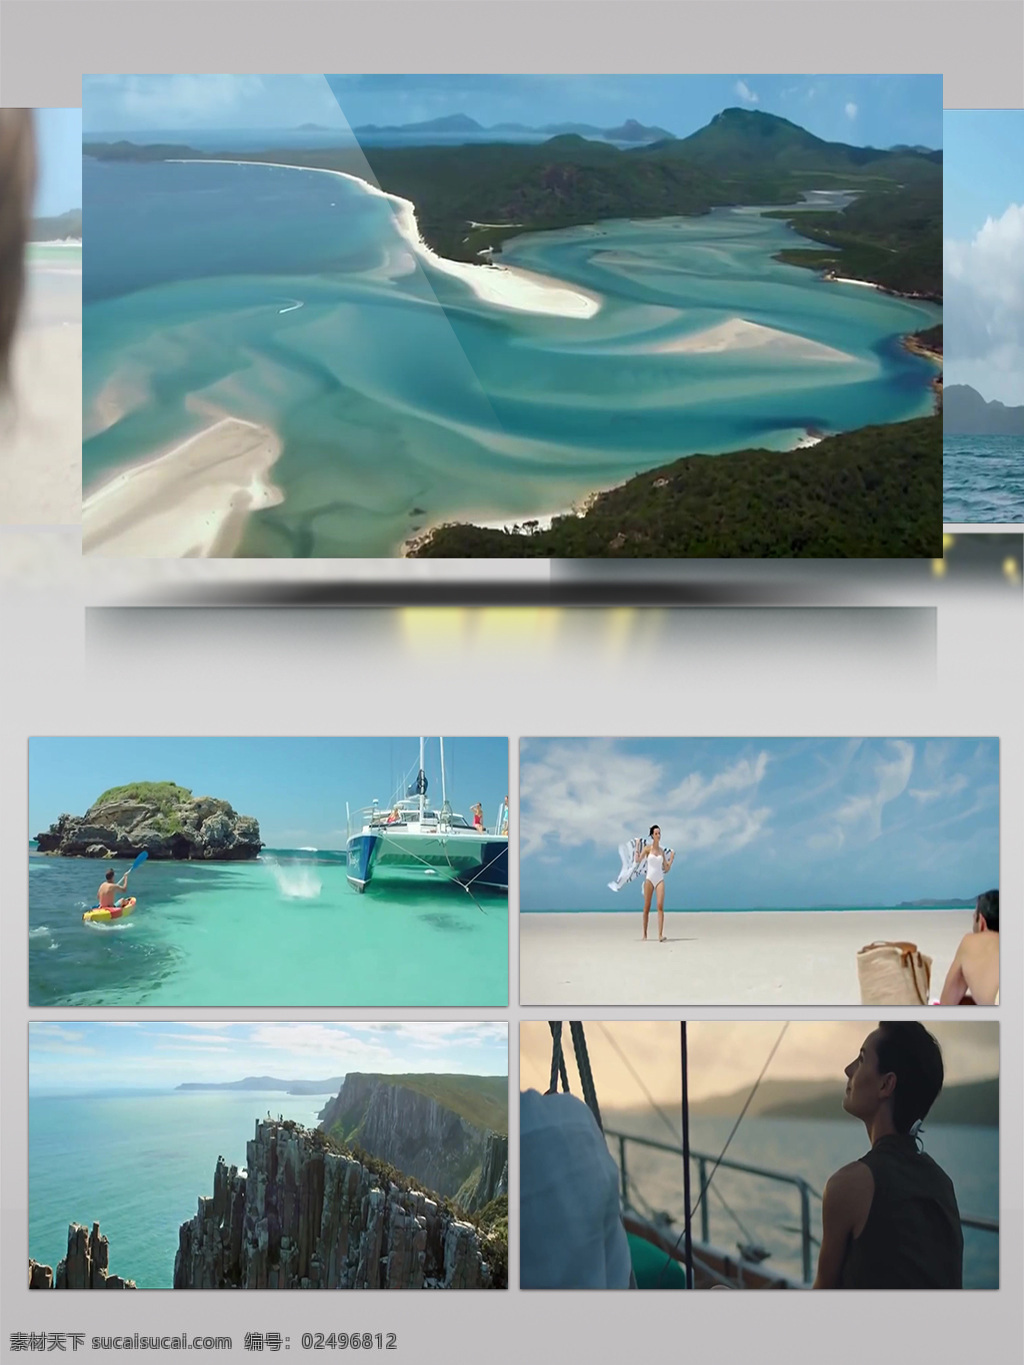 澳大利亚 旅游局 宣传片 风情 航拍 旅游 鸟瞰 人文 自然风光